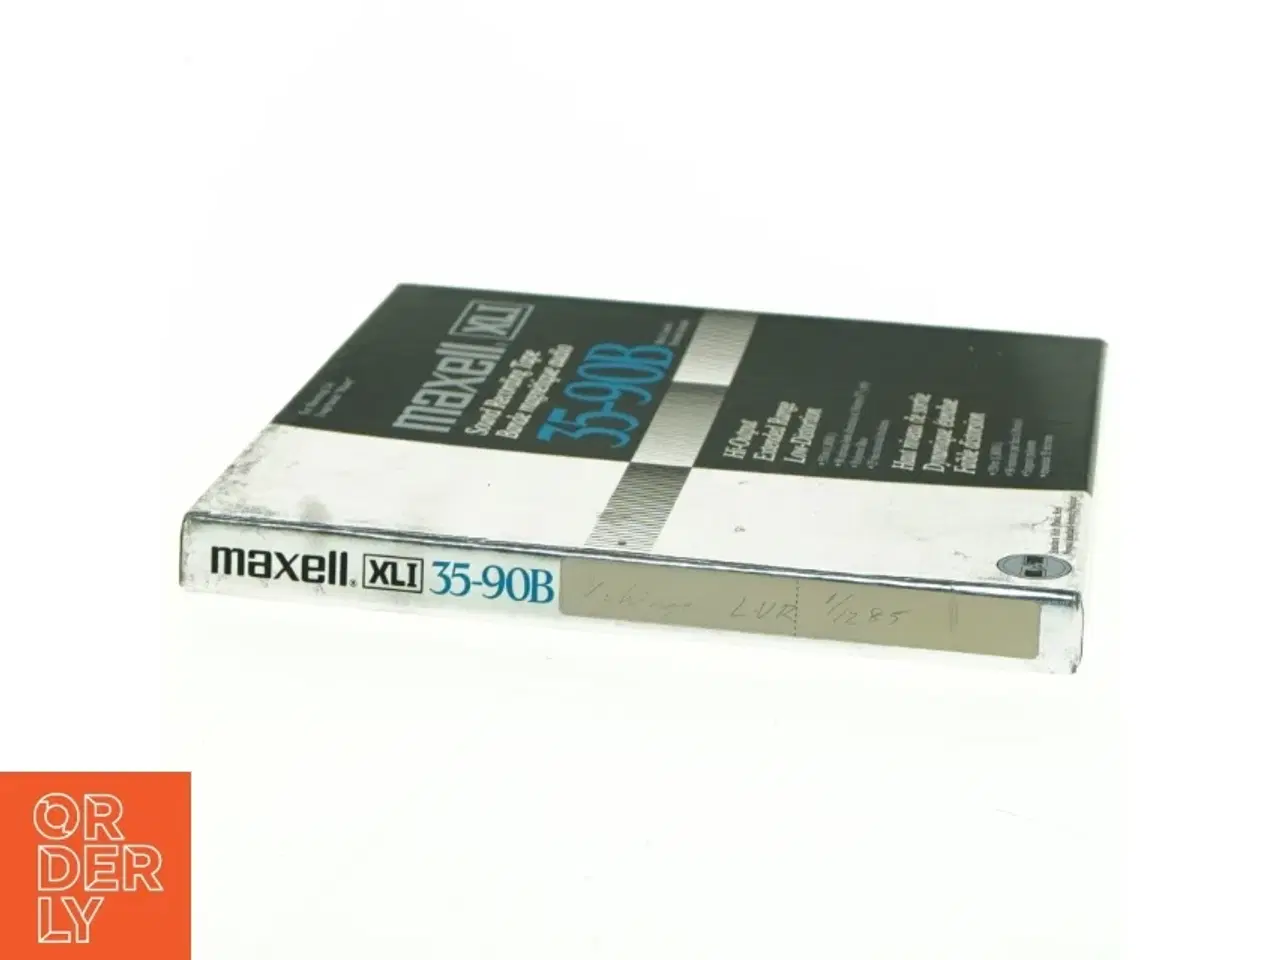 Billede 2 - Maxell XLI 35-90B audio tape fra Maxell (str. 18 x 18 cm)